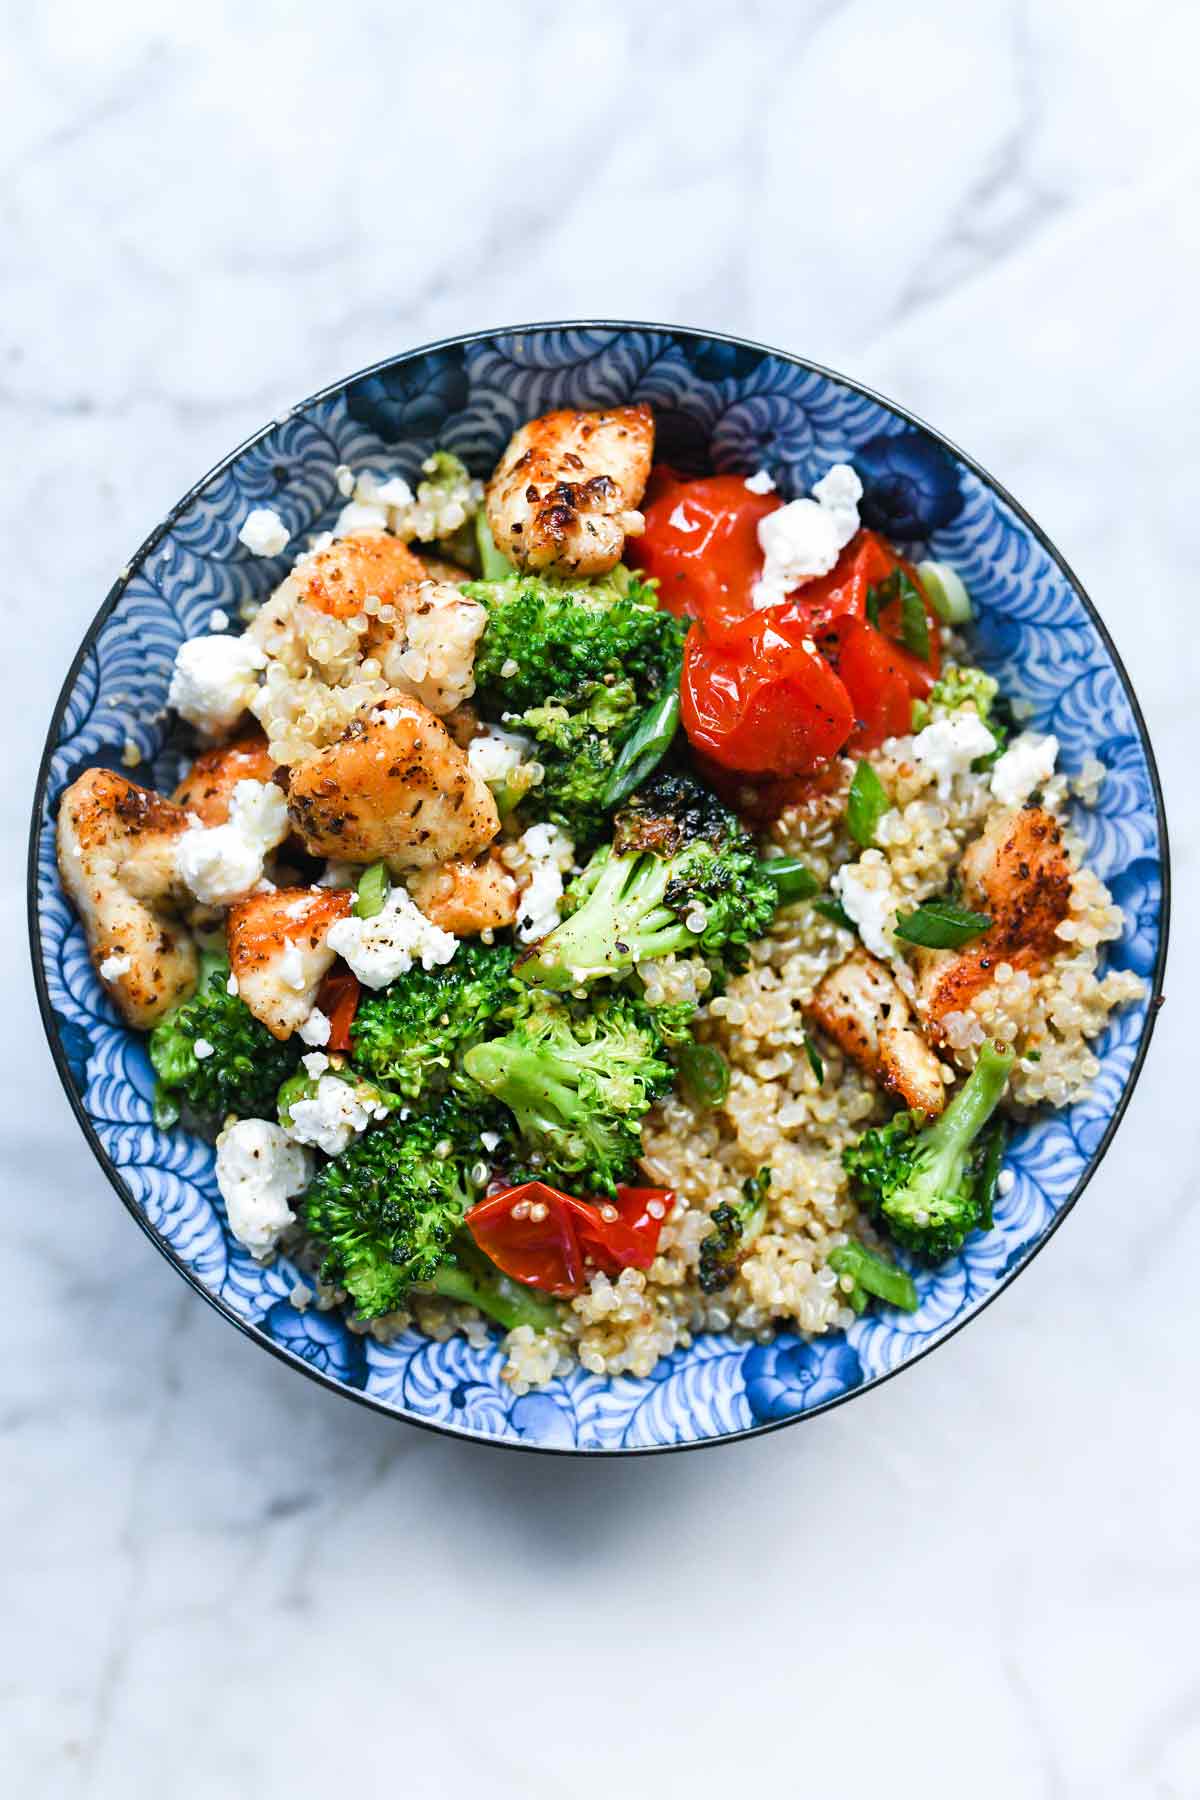 Mediterranean Chicken Quinoa Bowls with Broccoli and Tomato | foodiecrush.com #quinoa #bowl #mediterranean #chicken